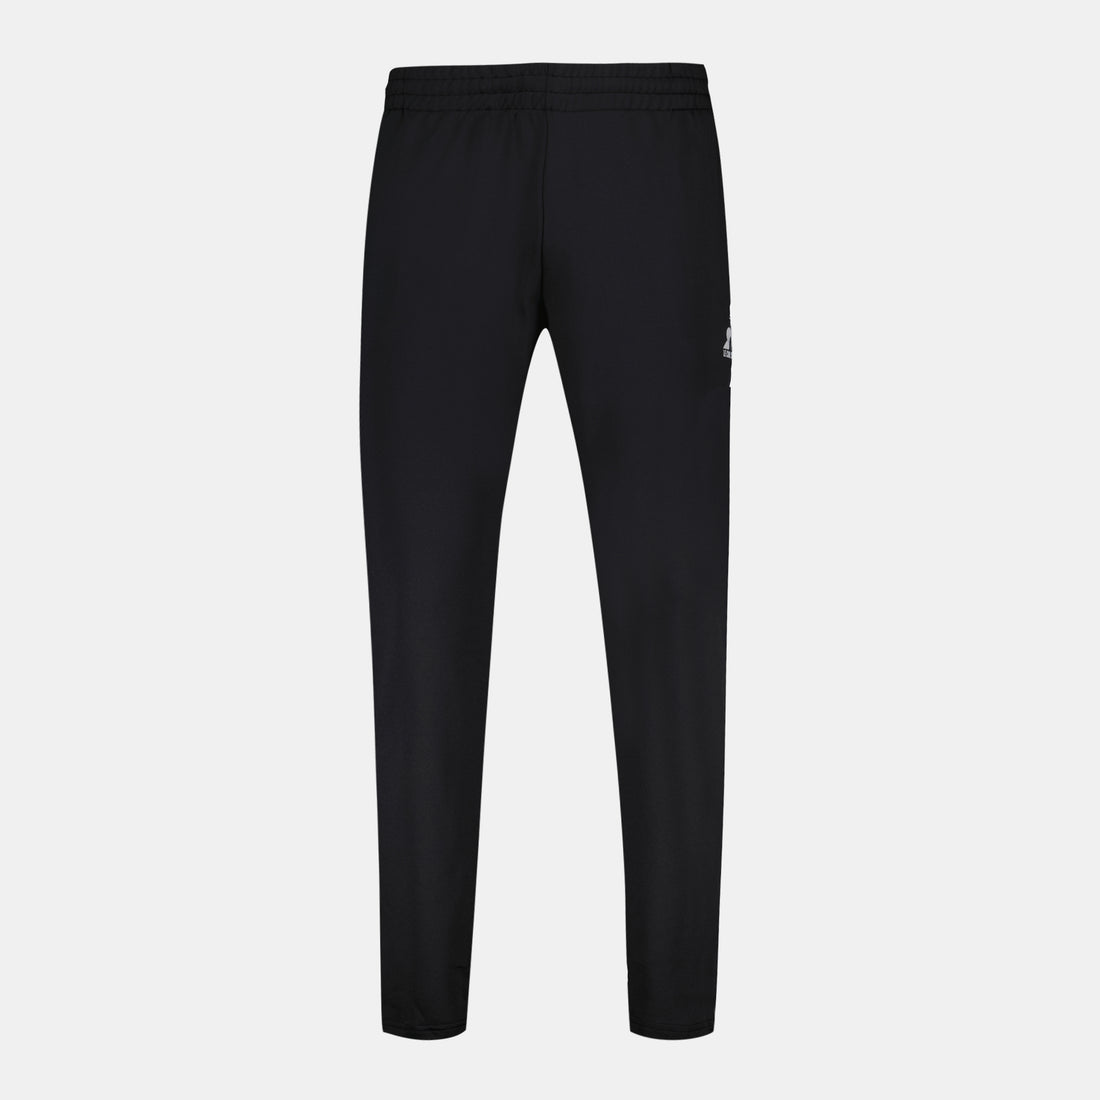 2321149-TRAINING LF Pant Carotte N°1 M black  | Trousers de sport coupe carotte for men